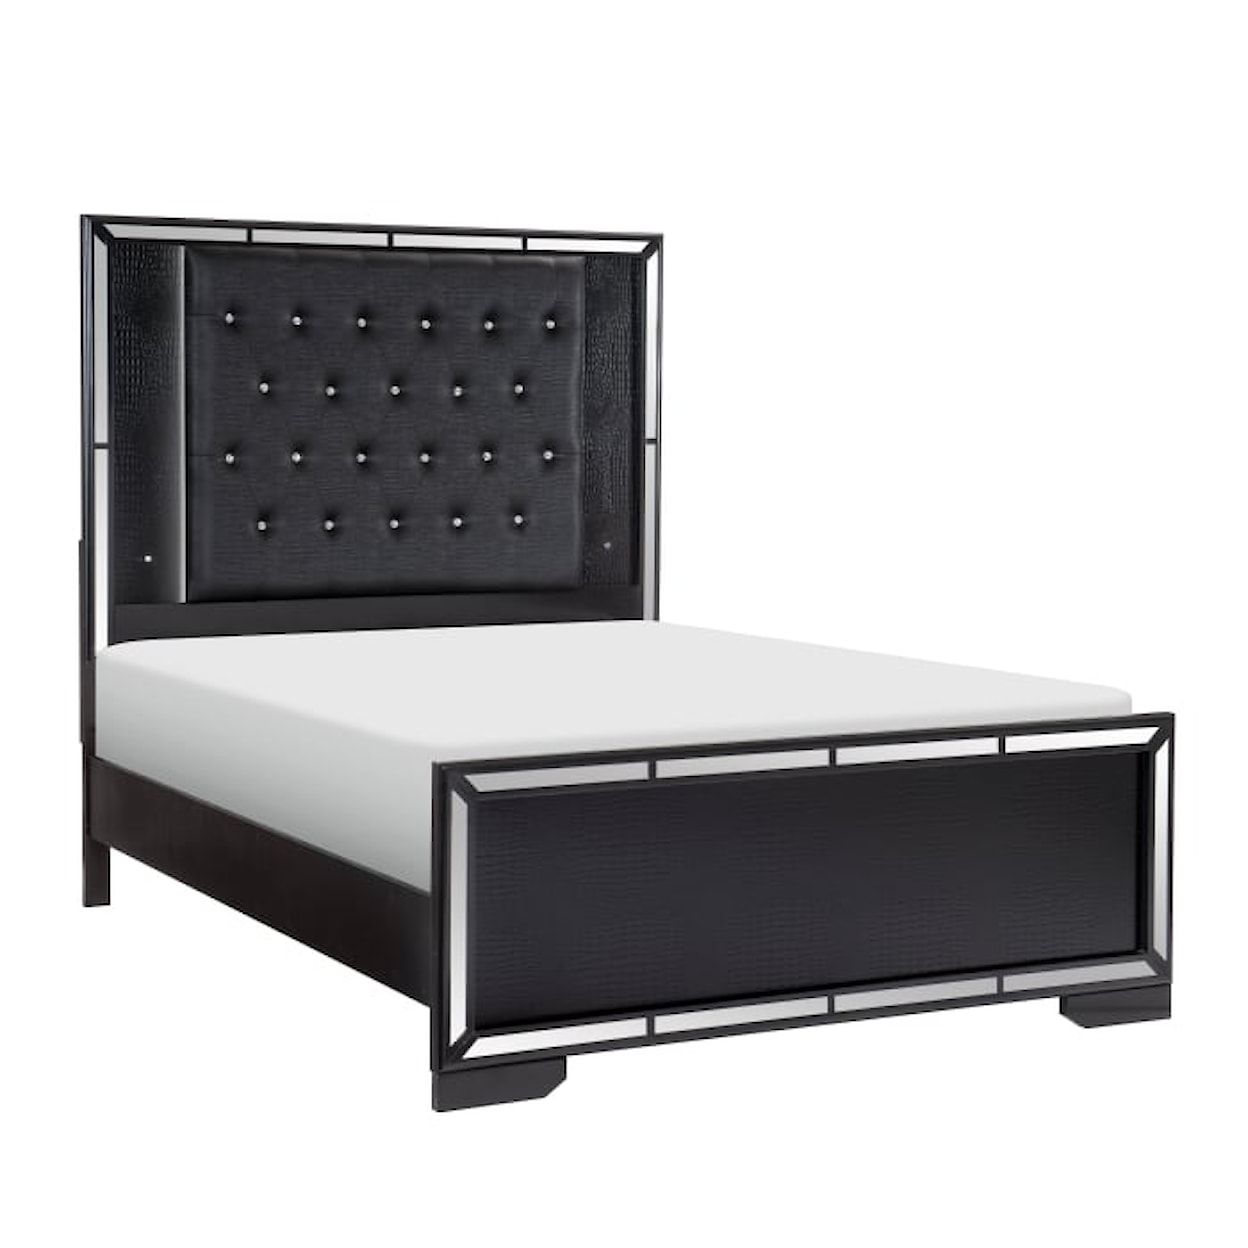 Homelegance Furniture Aveline 4-Piece Queen Bedroom Set